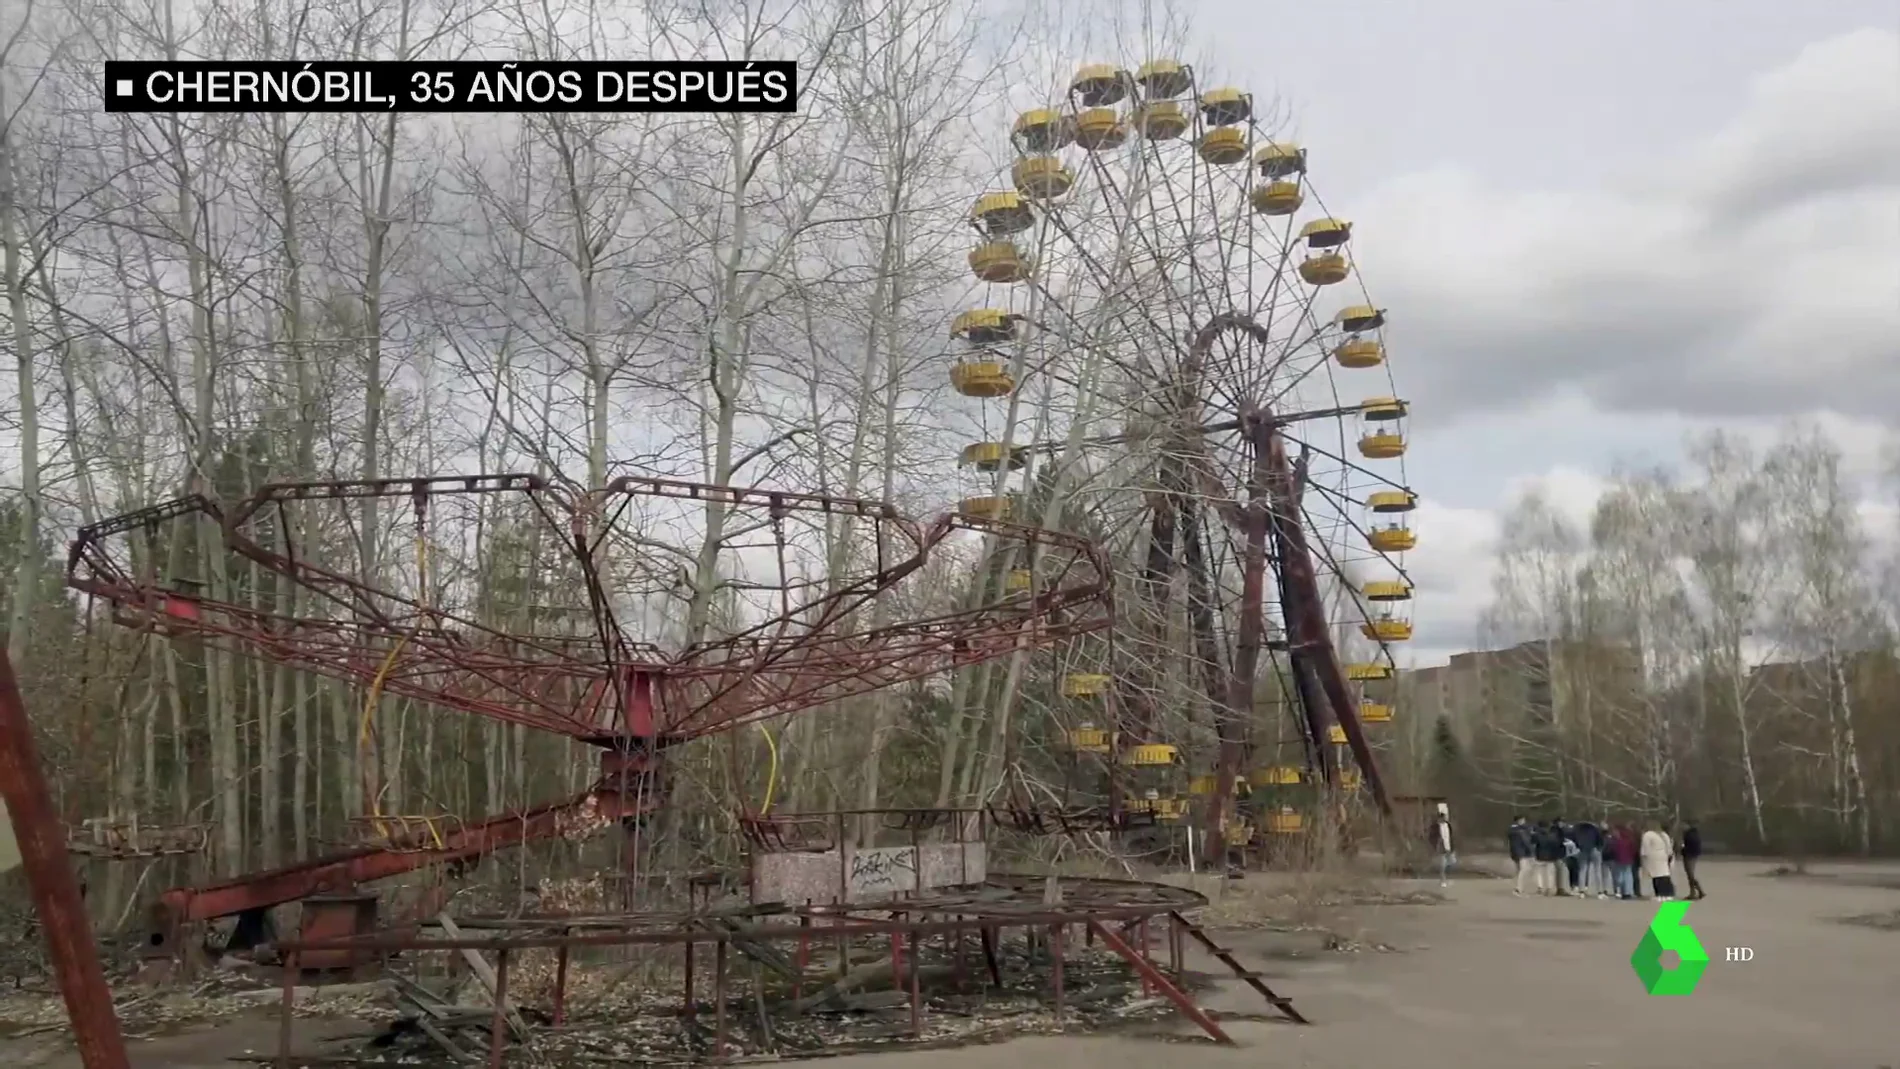  Viaje a Chernóbil 35 años después de la catástrofe: sí, la central nuclear sigue siendo el motor económico